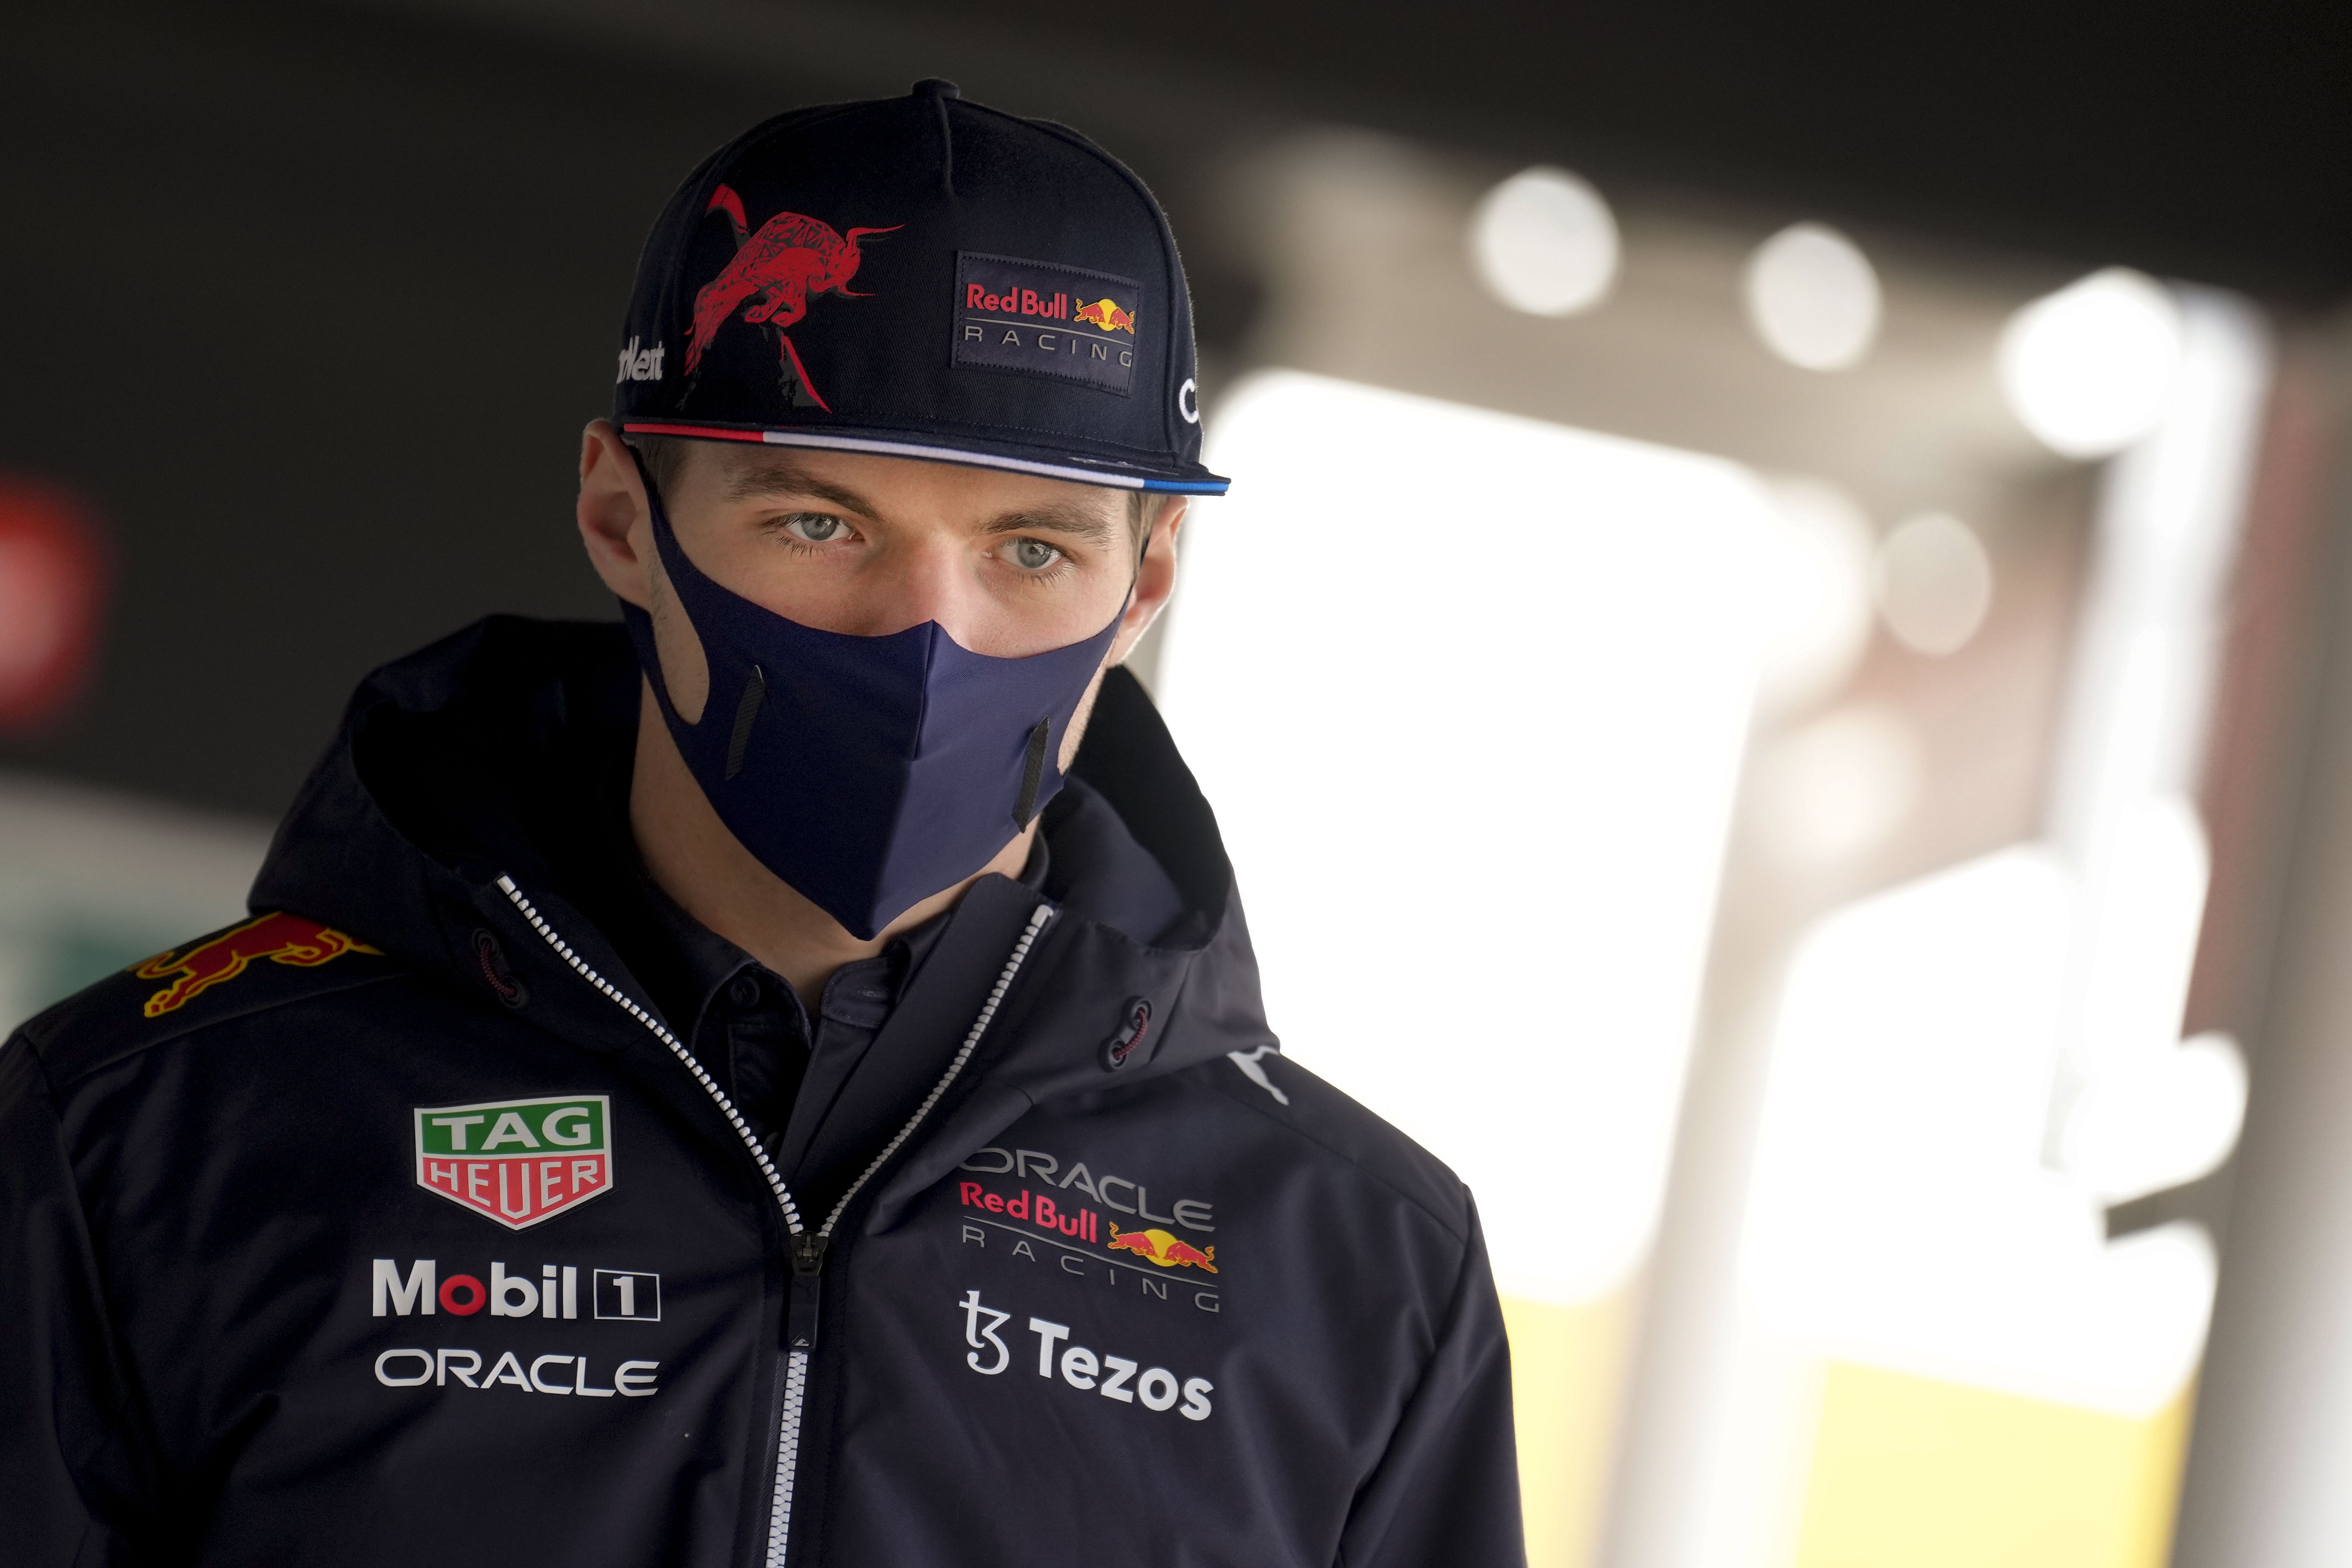 El piloto holandés de Red Bull, Max Verstappen durante la segunda jornada de los entrenamientos oficiales de pretemporada de Fórmula Uno que se celebran en el circuito de Barcelona. (Foto Prensa Libre: EFE)